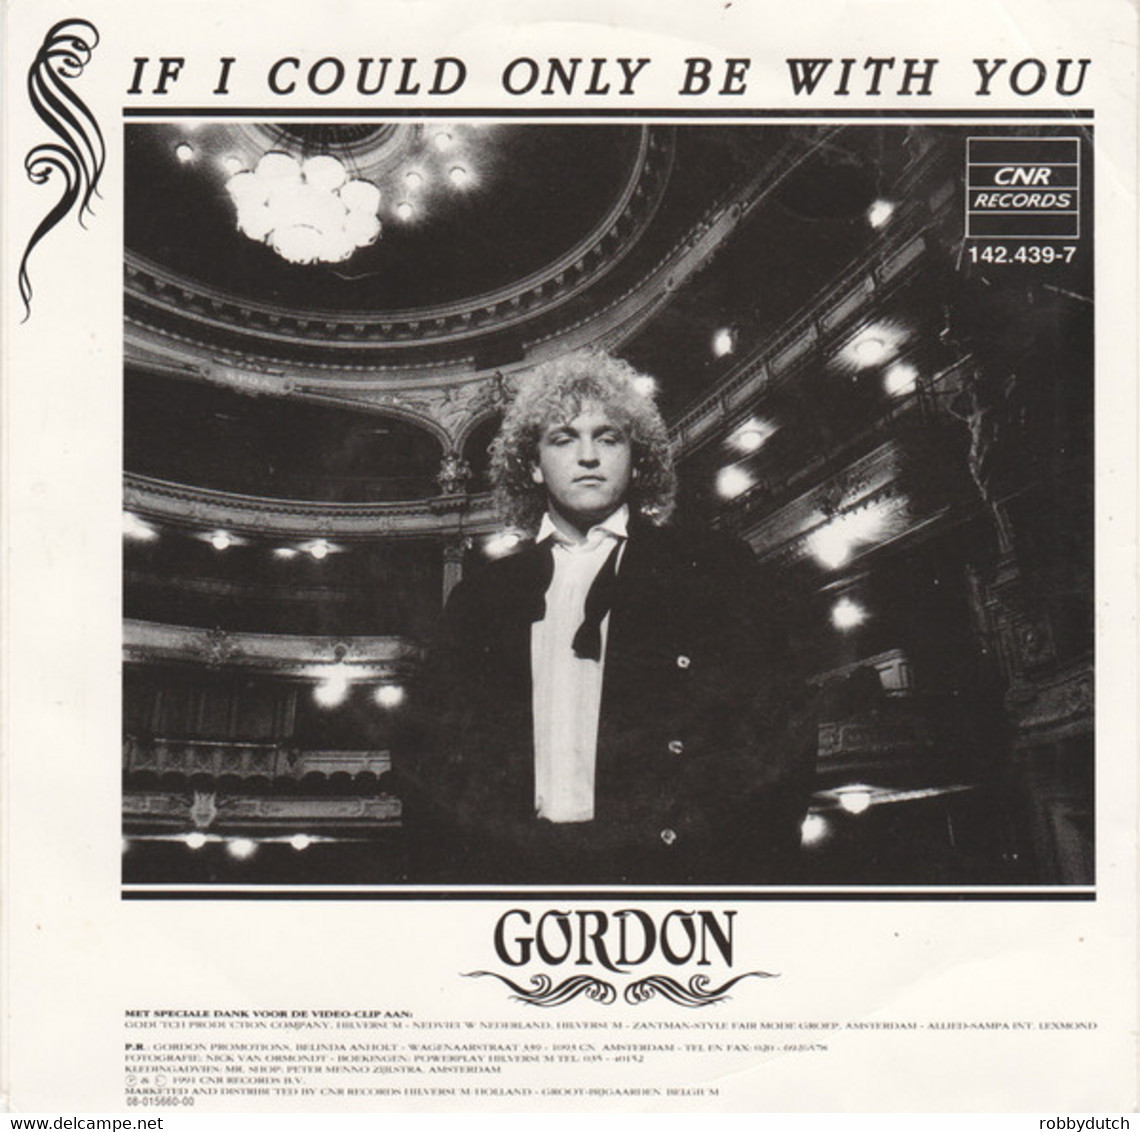 * 7" *  GORDON - KON IK MAAR EVEN BIJ JE ZIJN (Holland 1991) - Other - Dutch Music